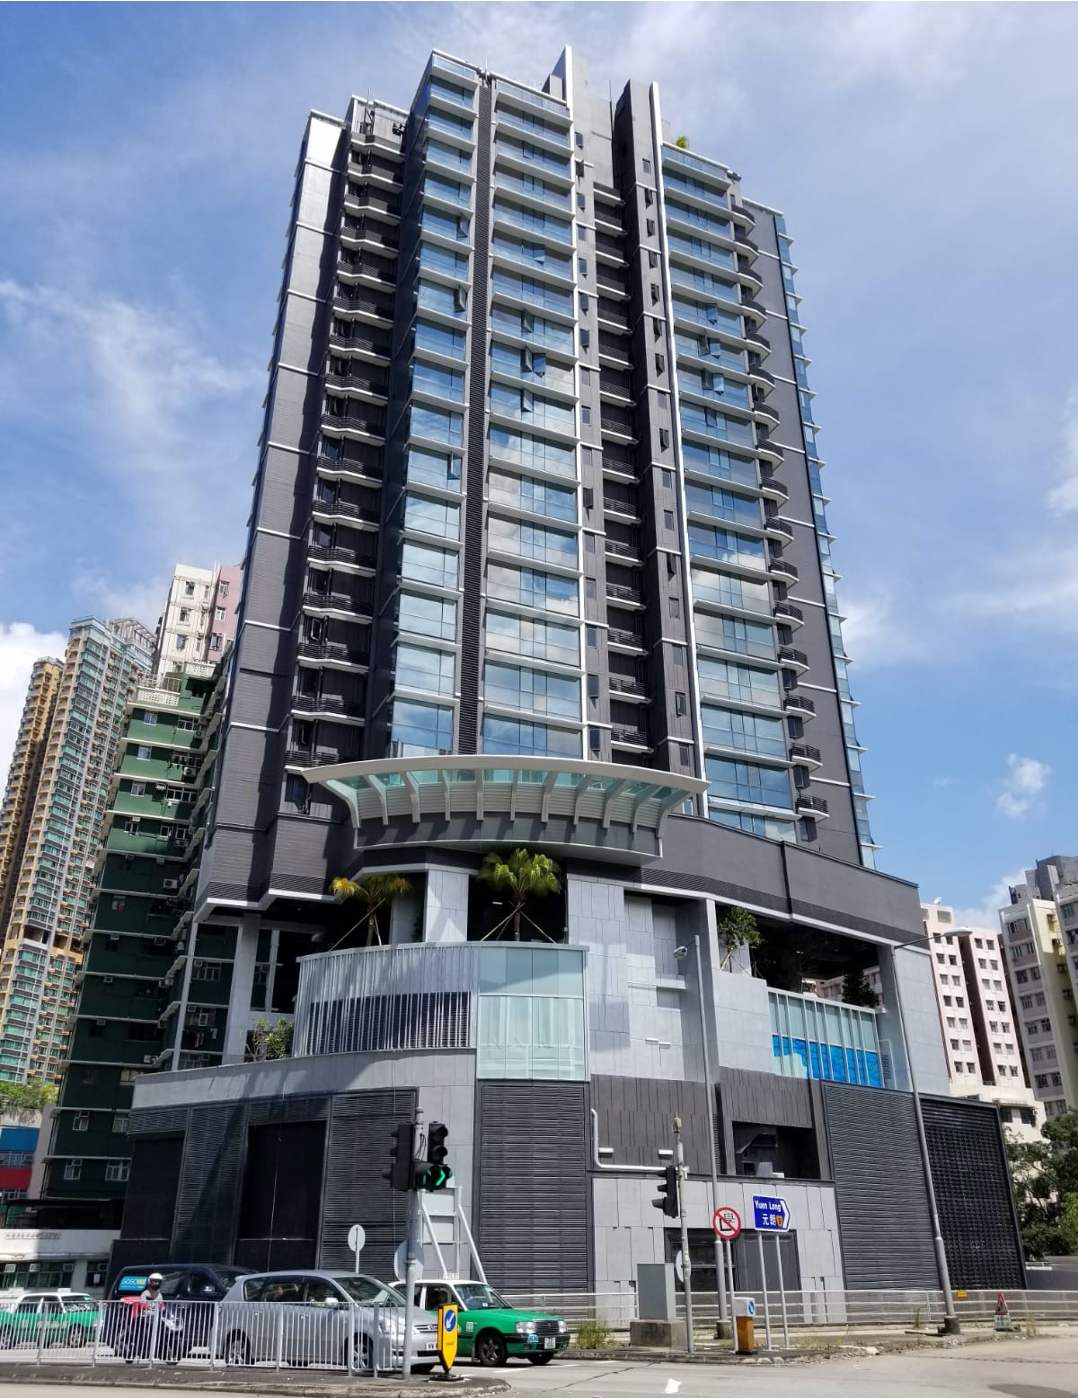 JS - Aluminium Windows in Hong Kong 高級歐洲鋁窗代理